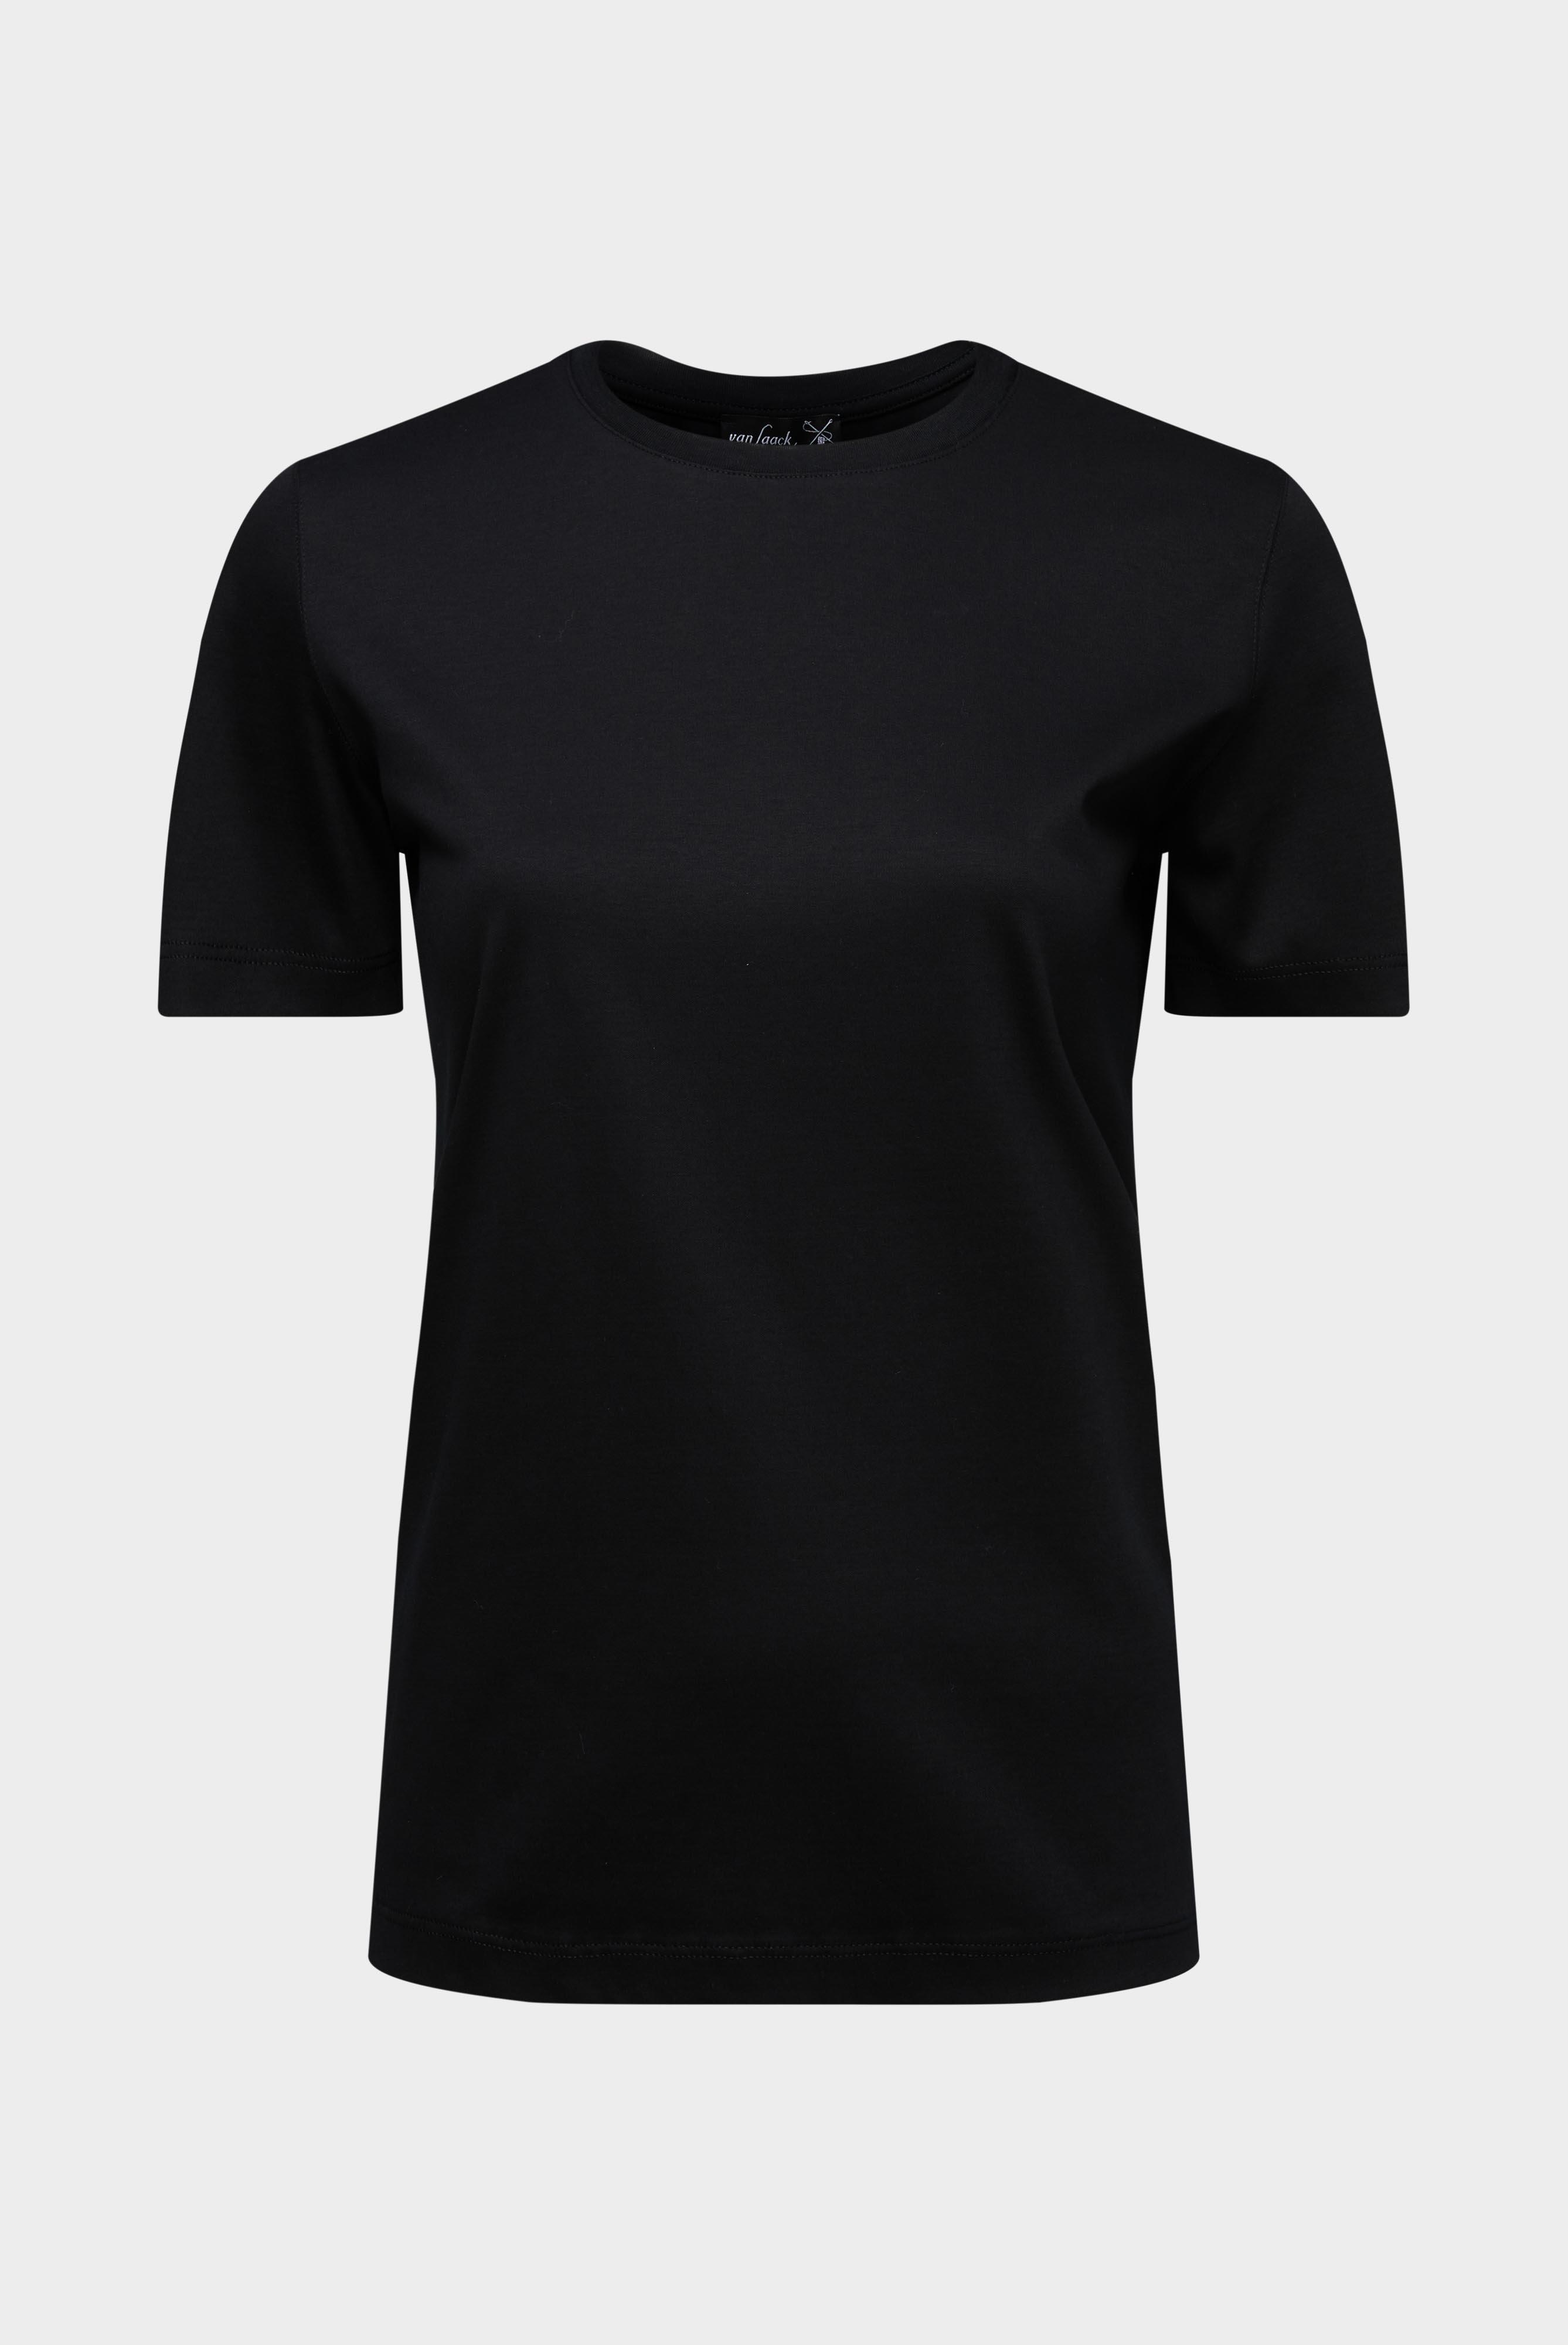 Tops & T-Shirts+Jersey T-Shirt+05.6384.18.180031.099.38